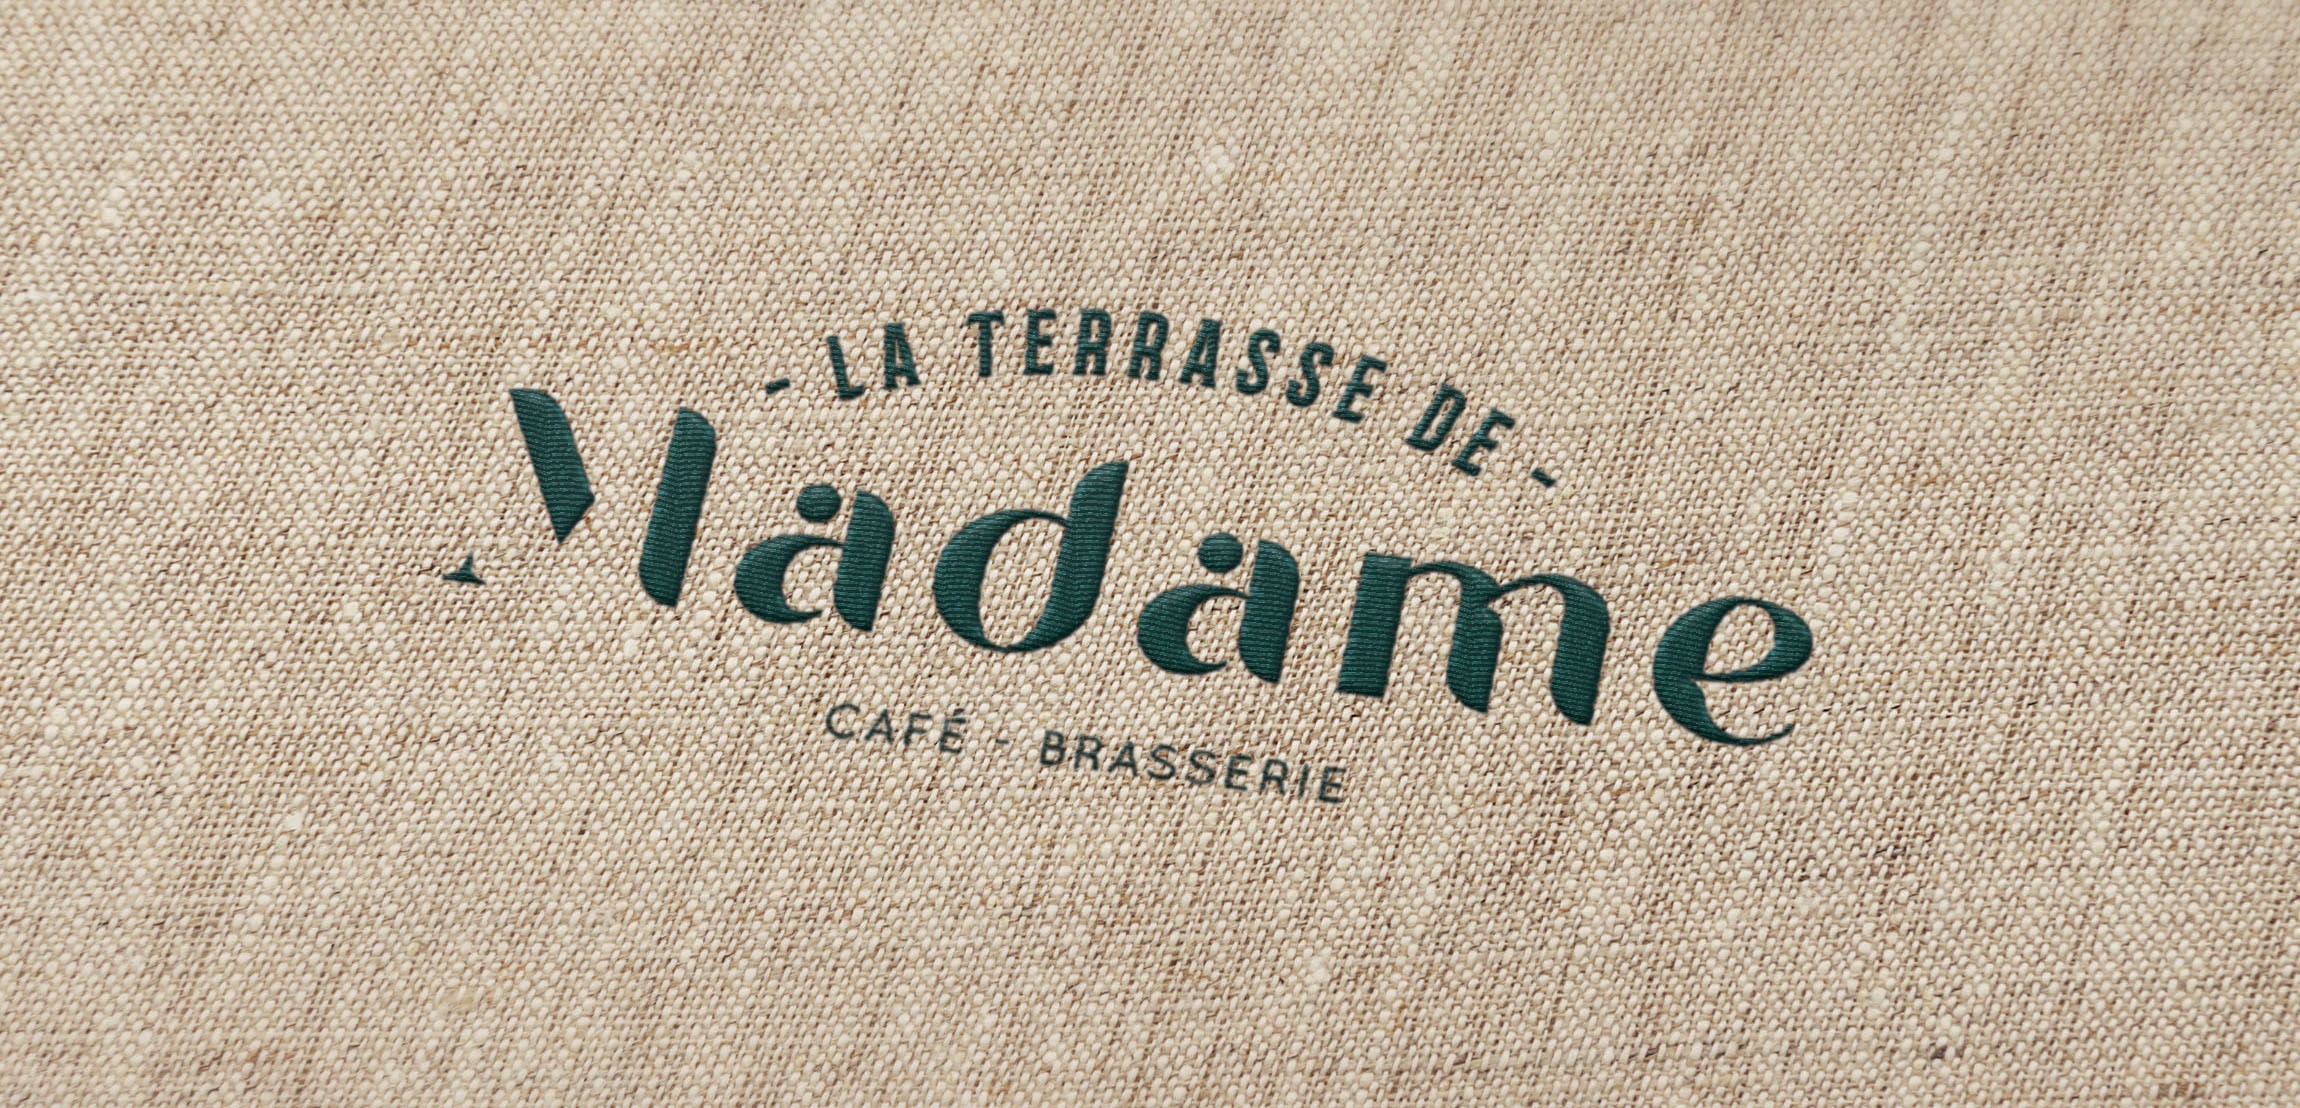 La Terrasse de Madame – Café, Brasserie